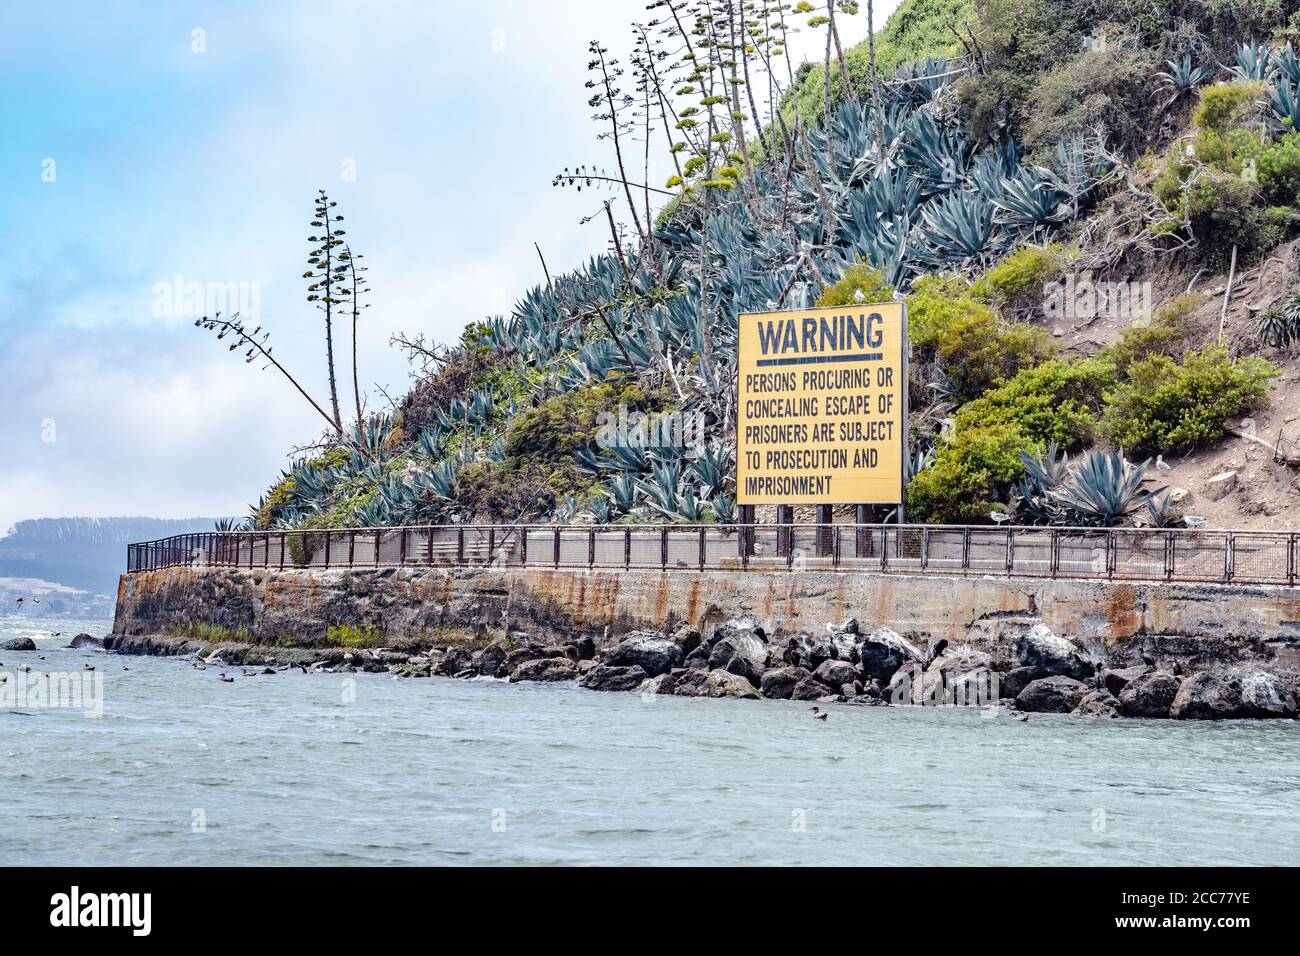 L'île d'Alcatraz, qui abritait autrefois une prison de haute sécurité, est aujourd'hui un monument historique national ouvert pour les visites à San Francisco, Californie Banque D'Images